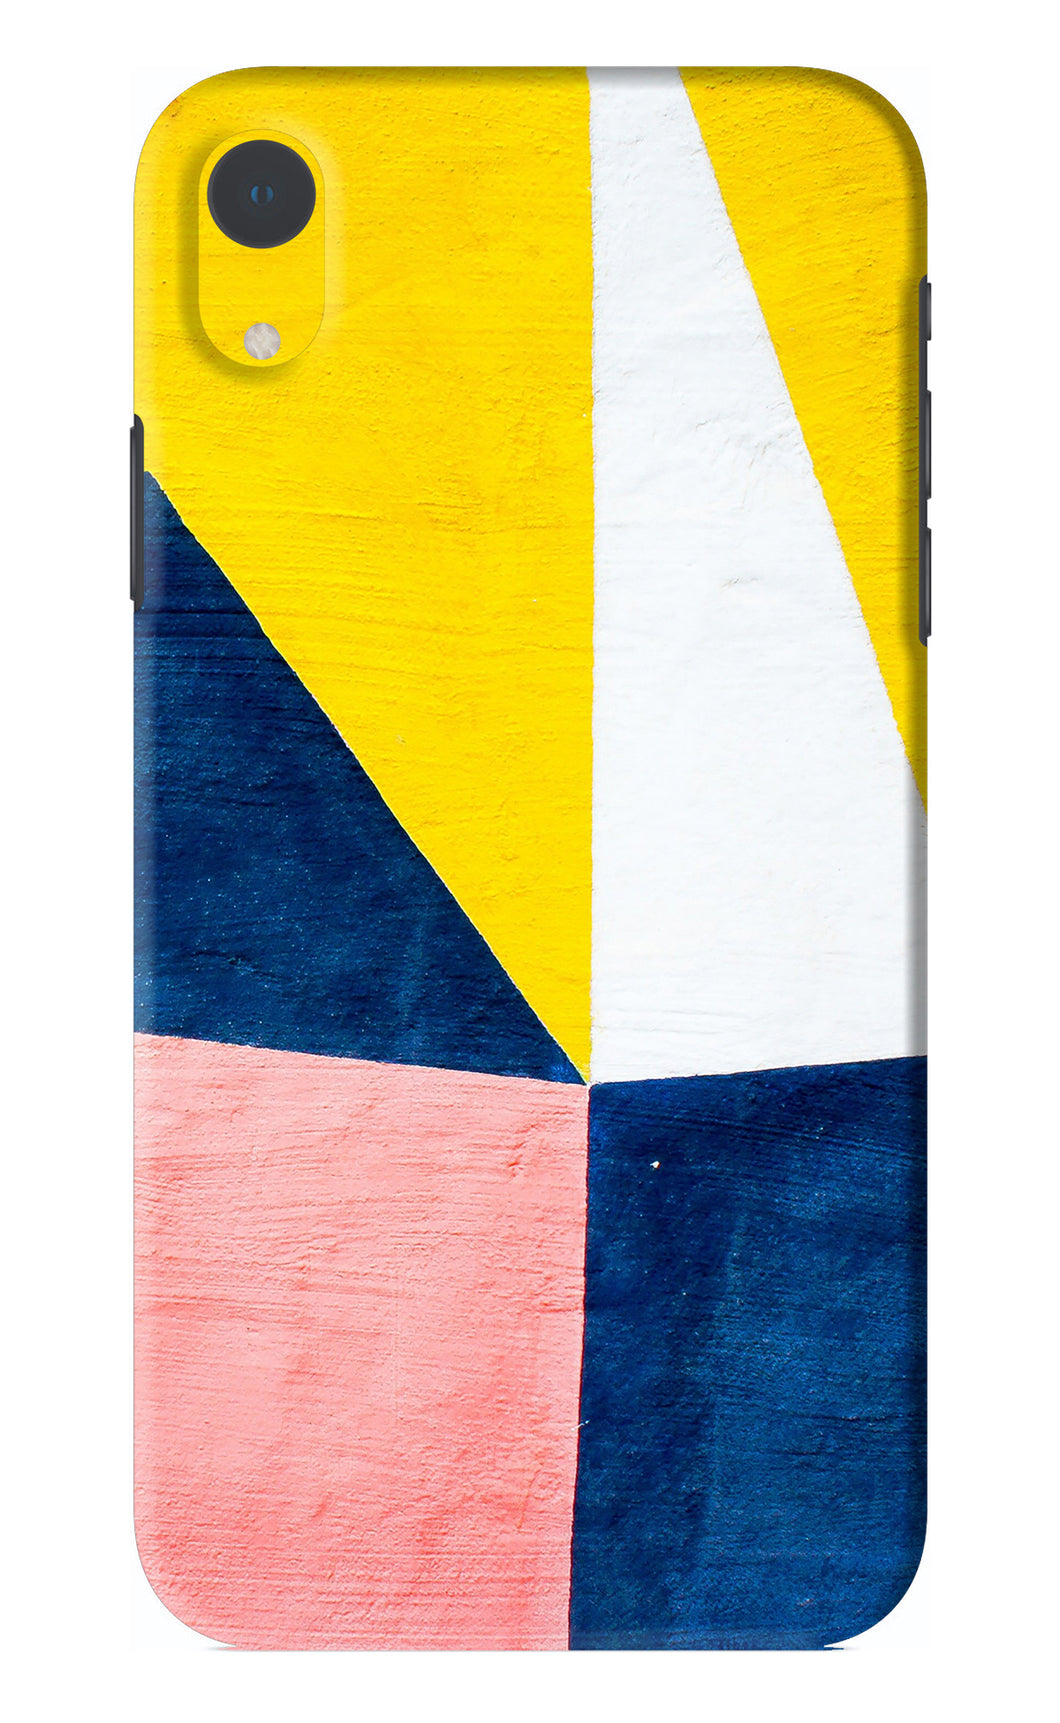 Colourful Art iPhone XR Back Skin Wrap